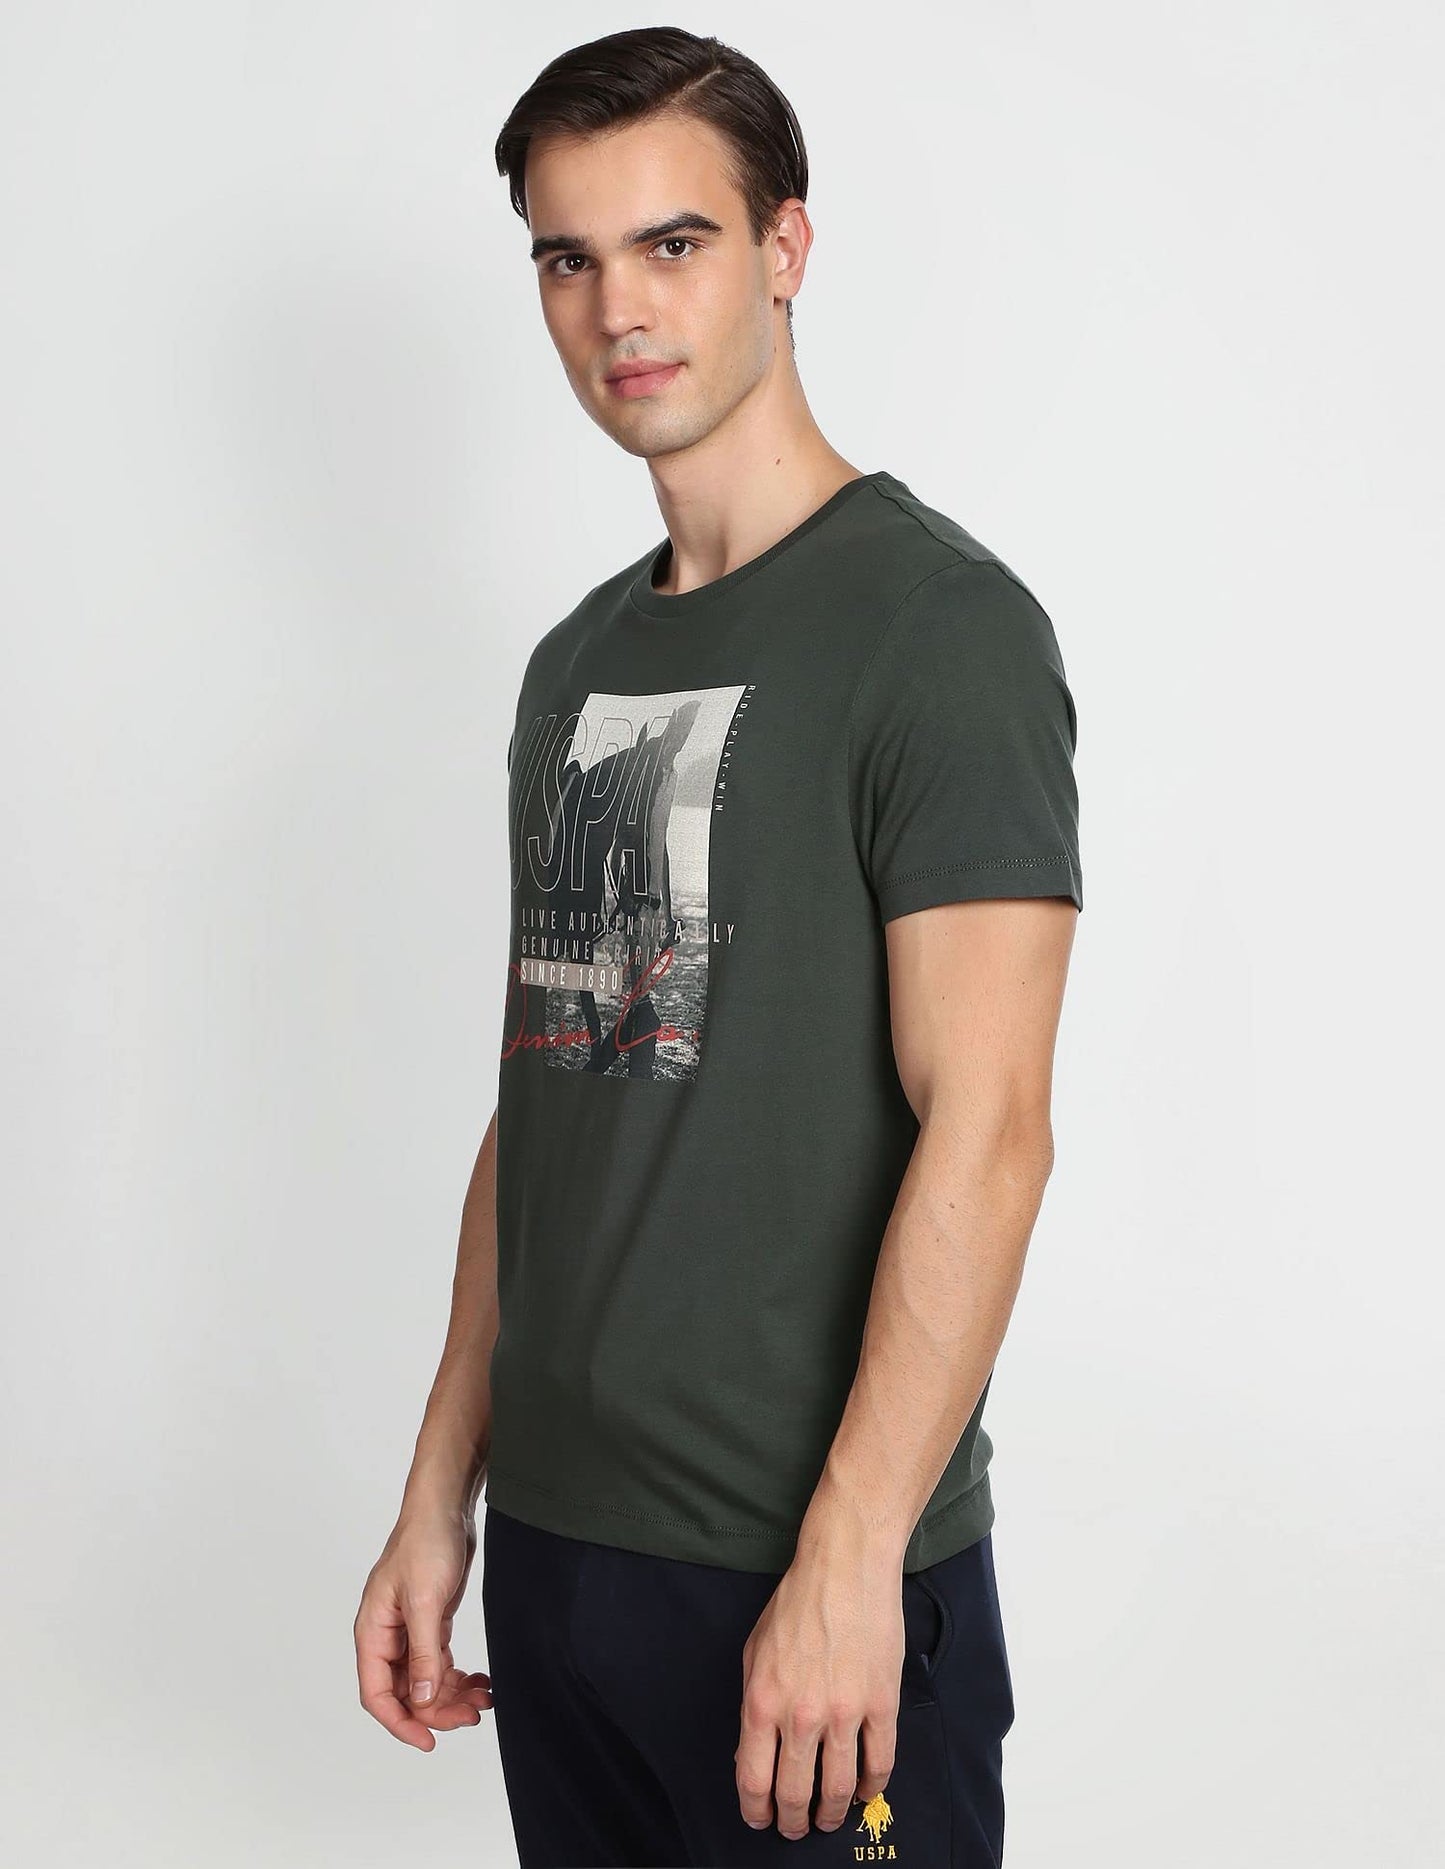 U.S. POLO ASSN. Men's Regular Fit T-Shirt (UDTSHF0240_Olive